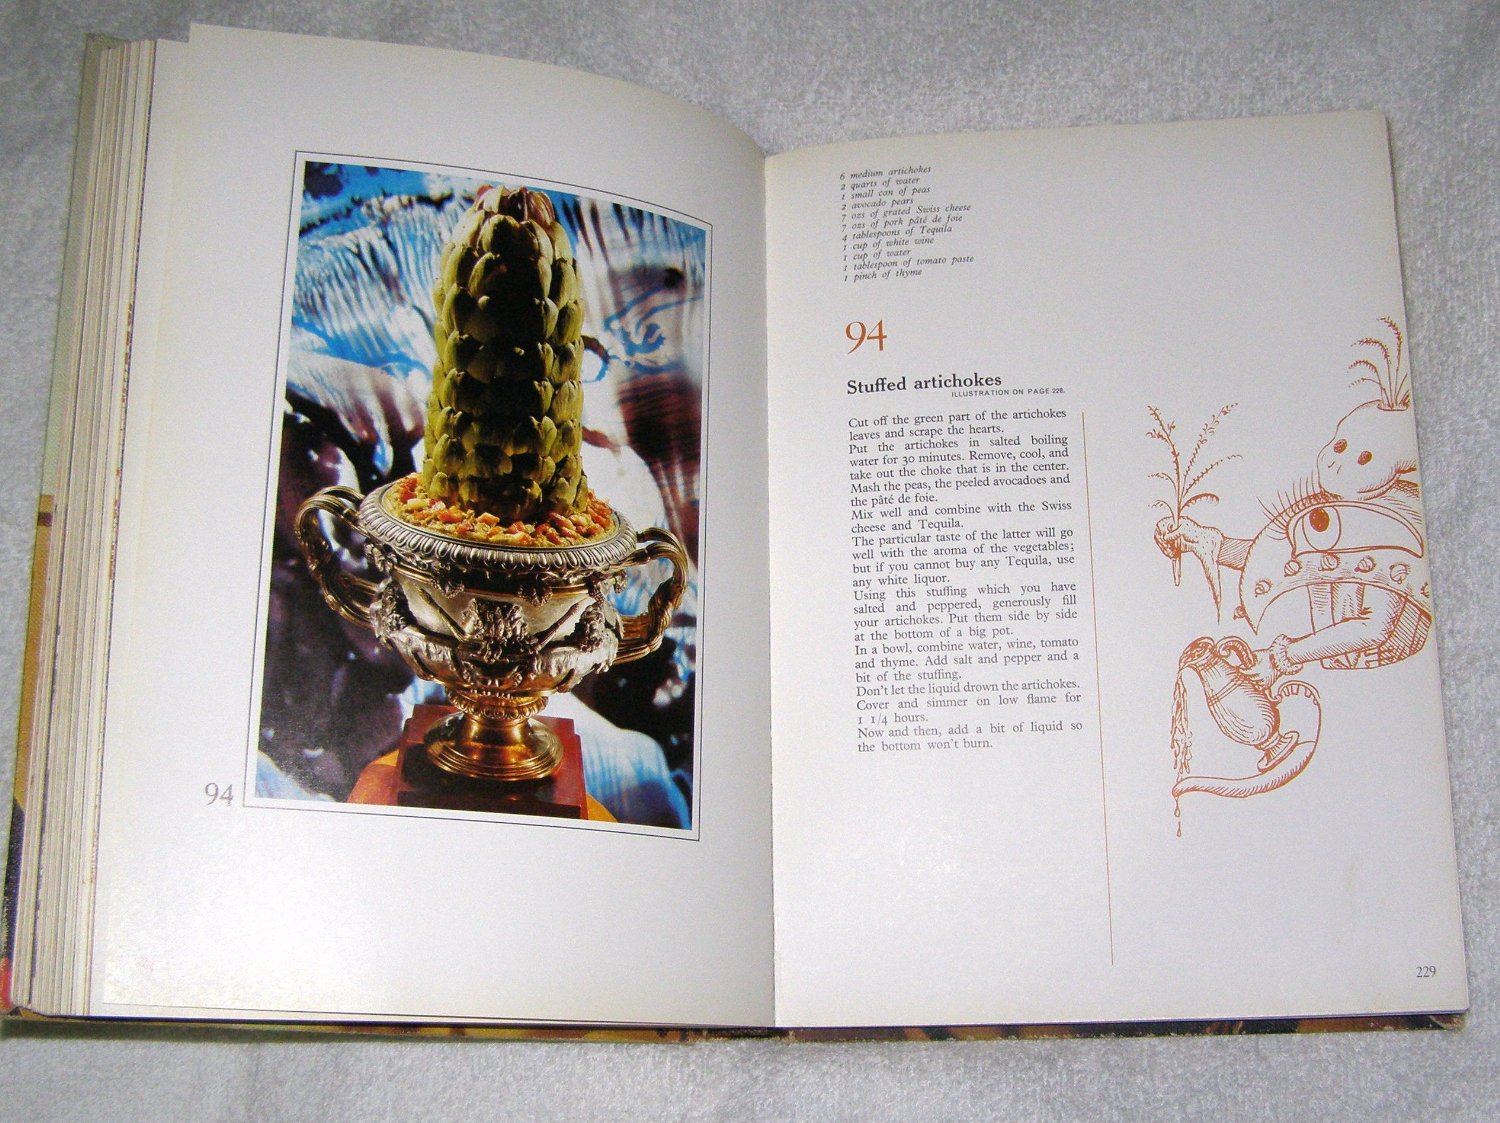 Salvador Dalí ritka, erotikus vintázs szakácskönyve